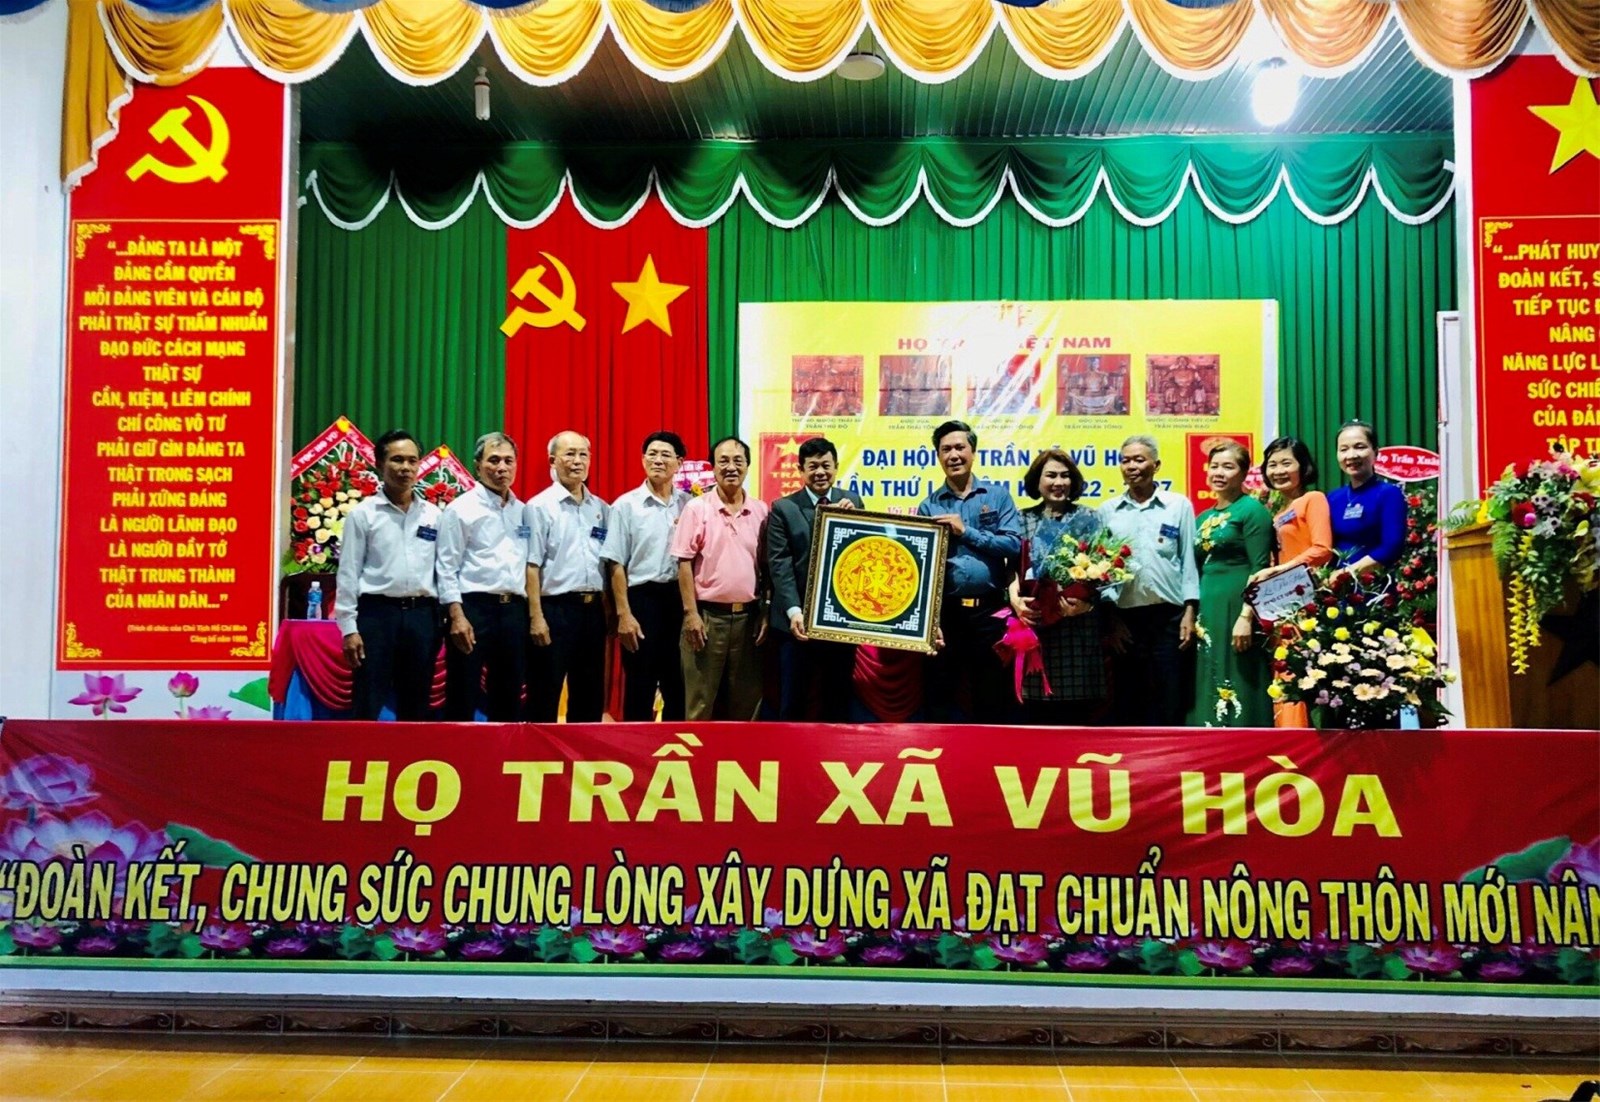 Đại hội họ Trần Việt Nam xã Vũ Hòa lần thứ nhất nhiệm kỳ 2022 - 2027